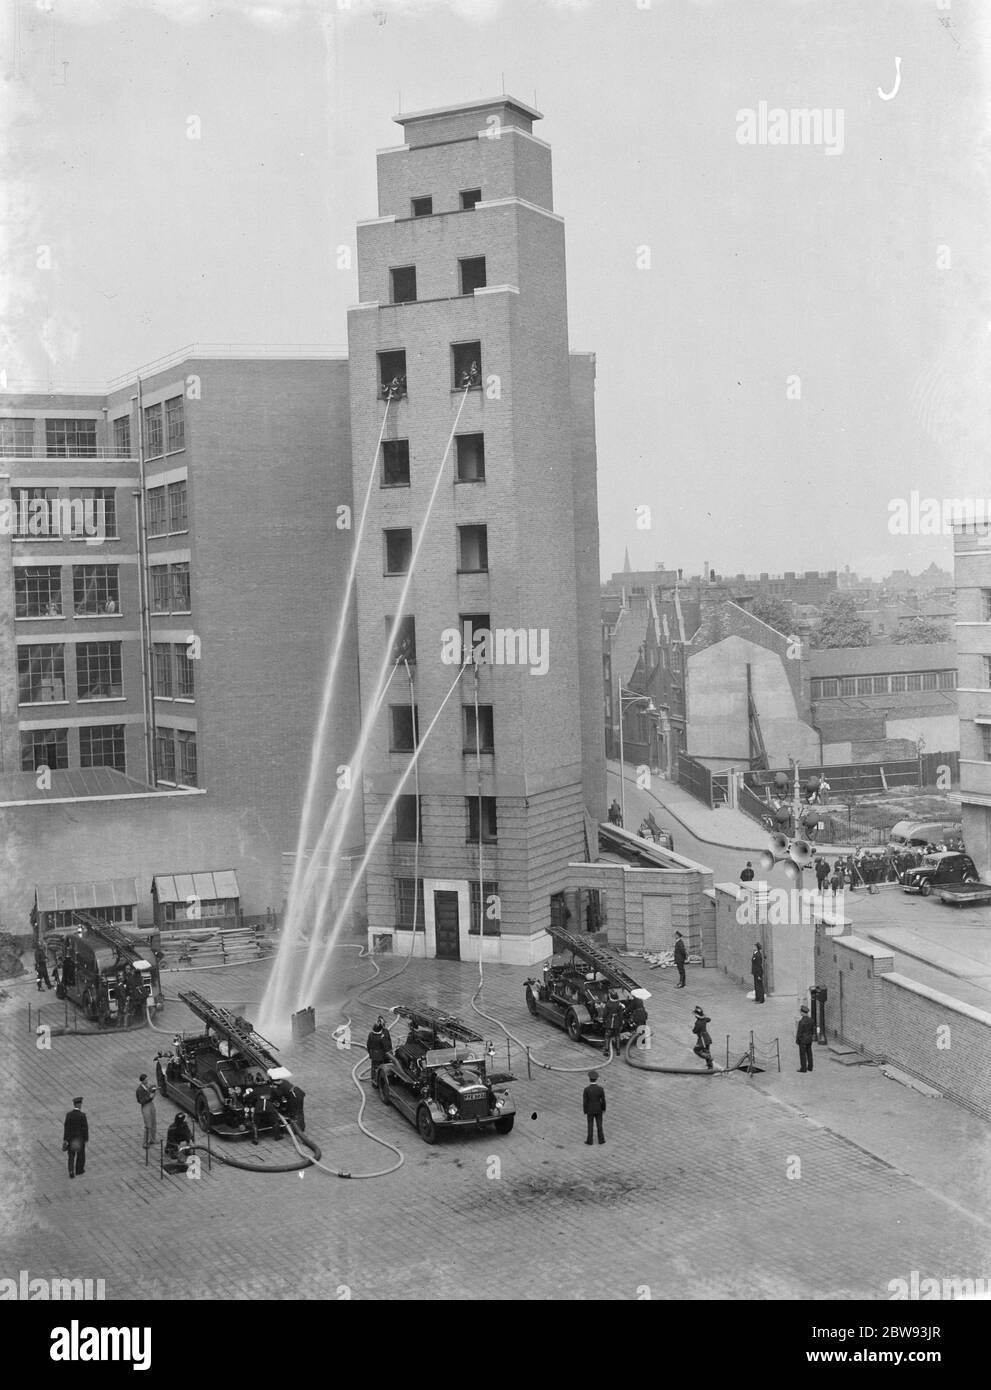 Eine Londoner Feuerwehr-Display in Lambeth, London. Feuerwehrschlauch unten von den Fenstern eines hohen Gebäudes demonstriert die Genauigkeit ihrer Schläuche, indem sie auf eine Feuerplatte auf dem Boden sprühen. 1939 Stockfoto